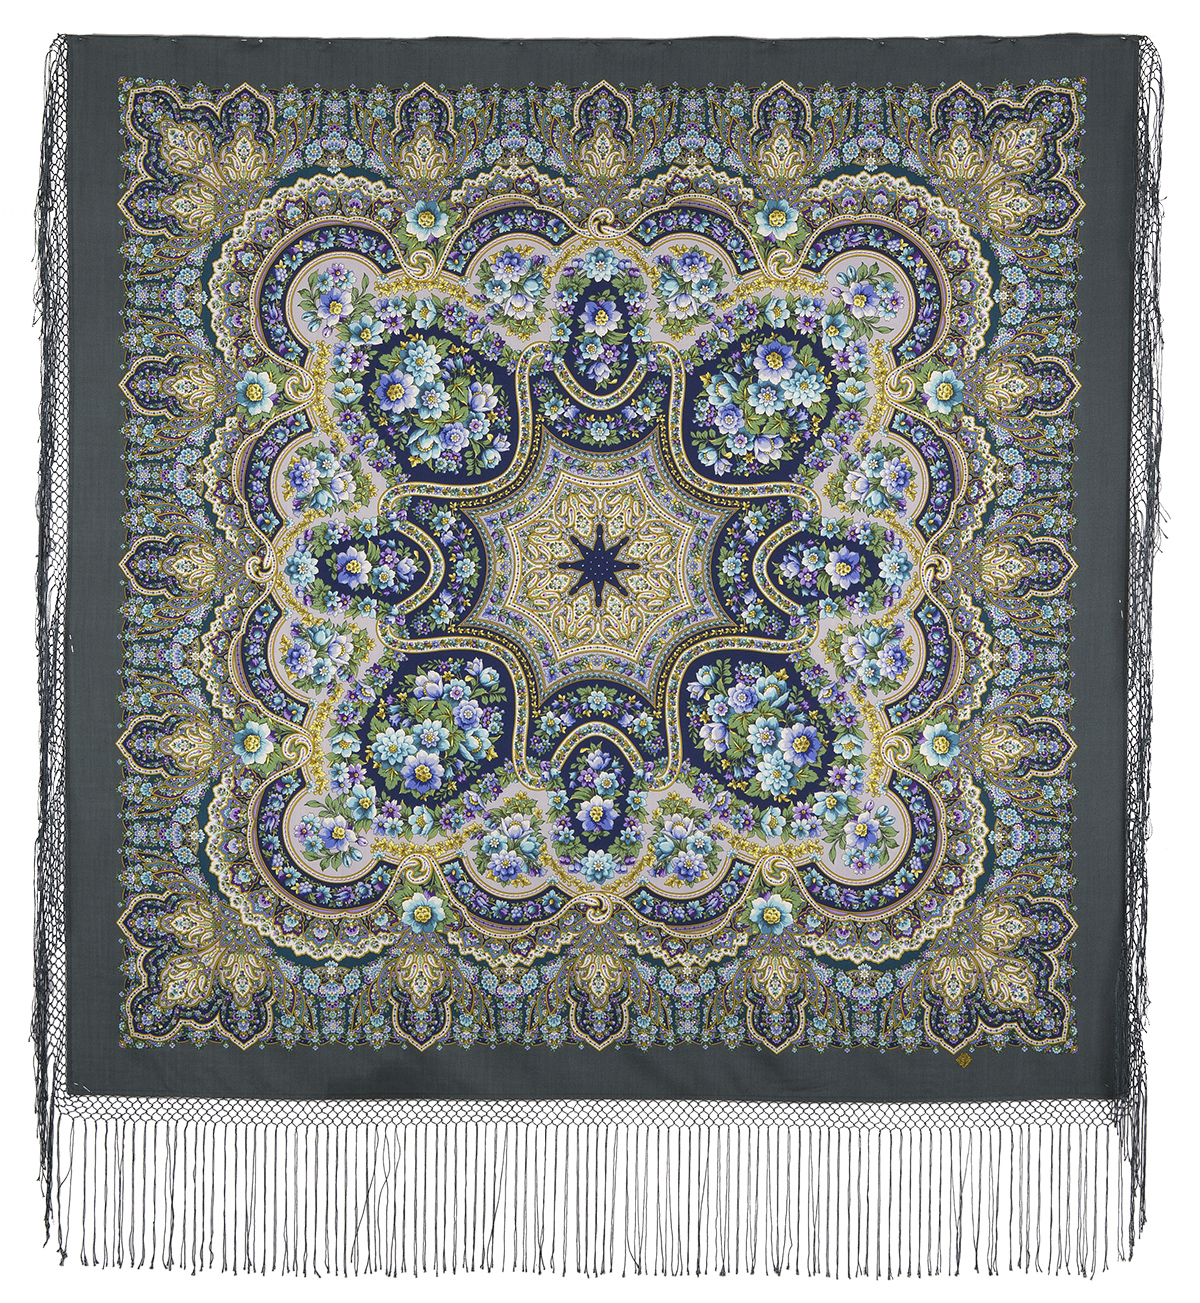 Платок женский Павловопосадский платок 1788 серый/зеленый, 148х148 см